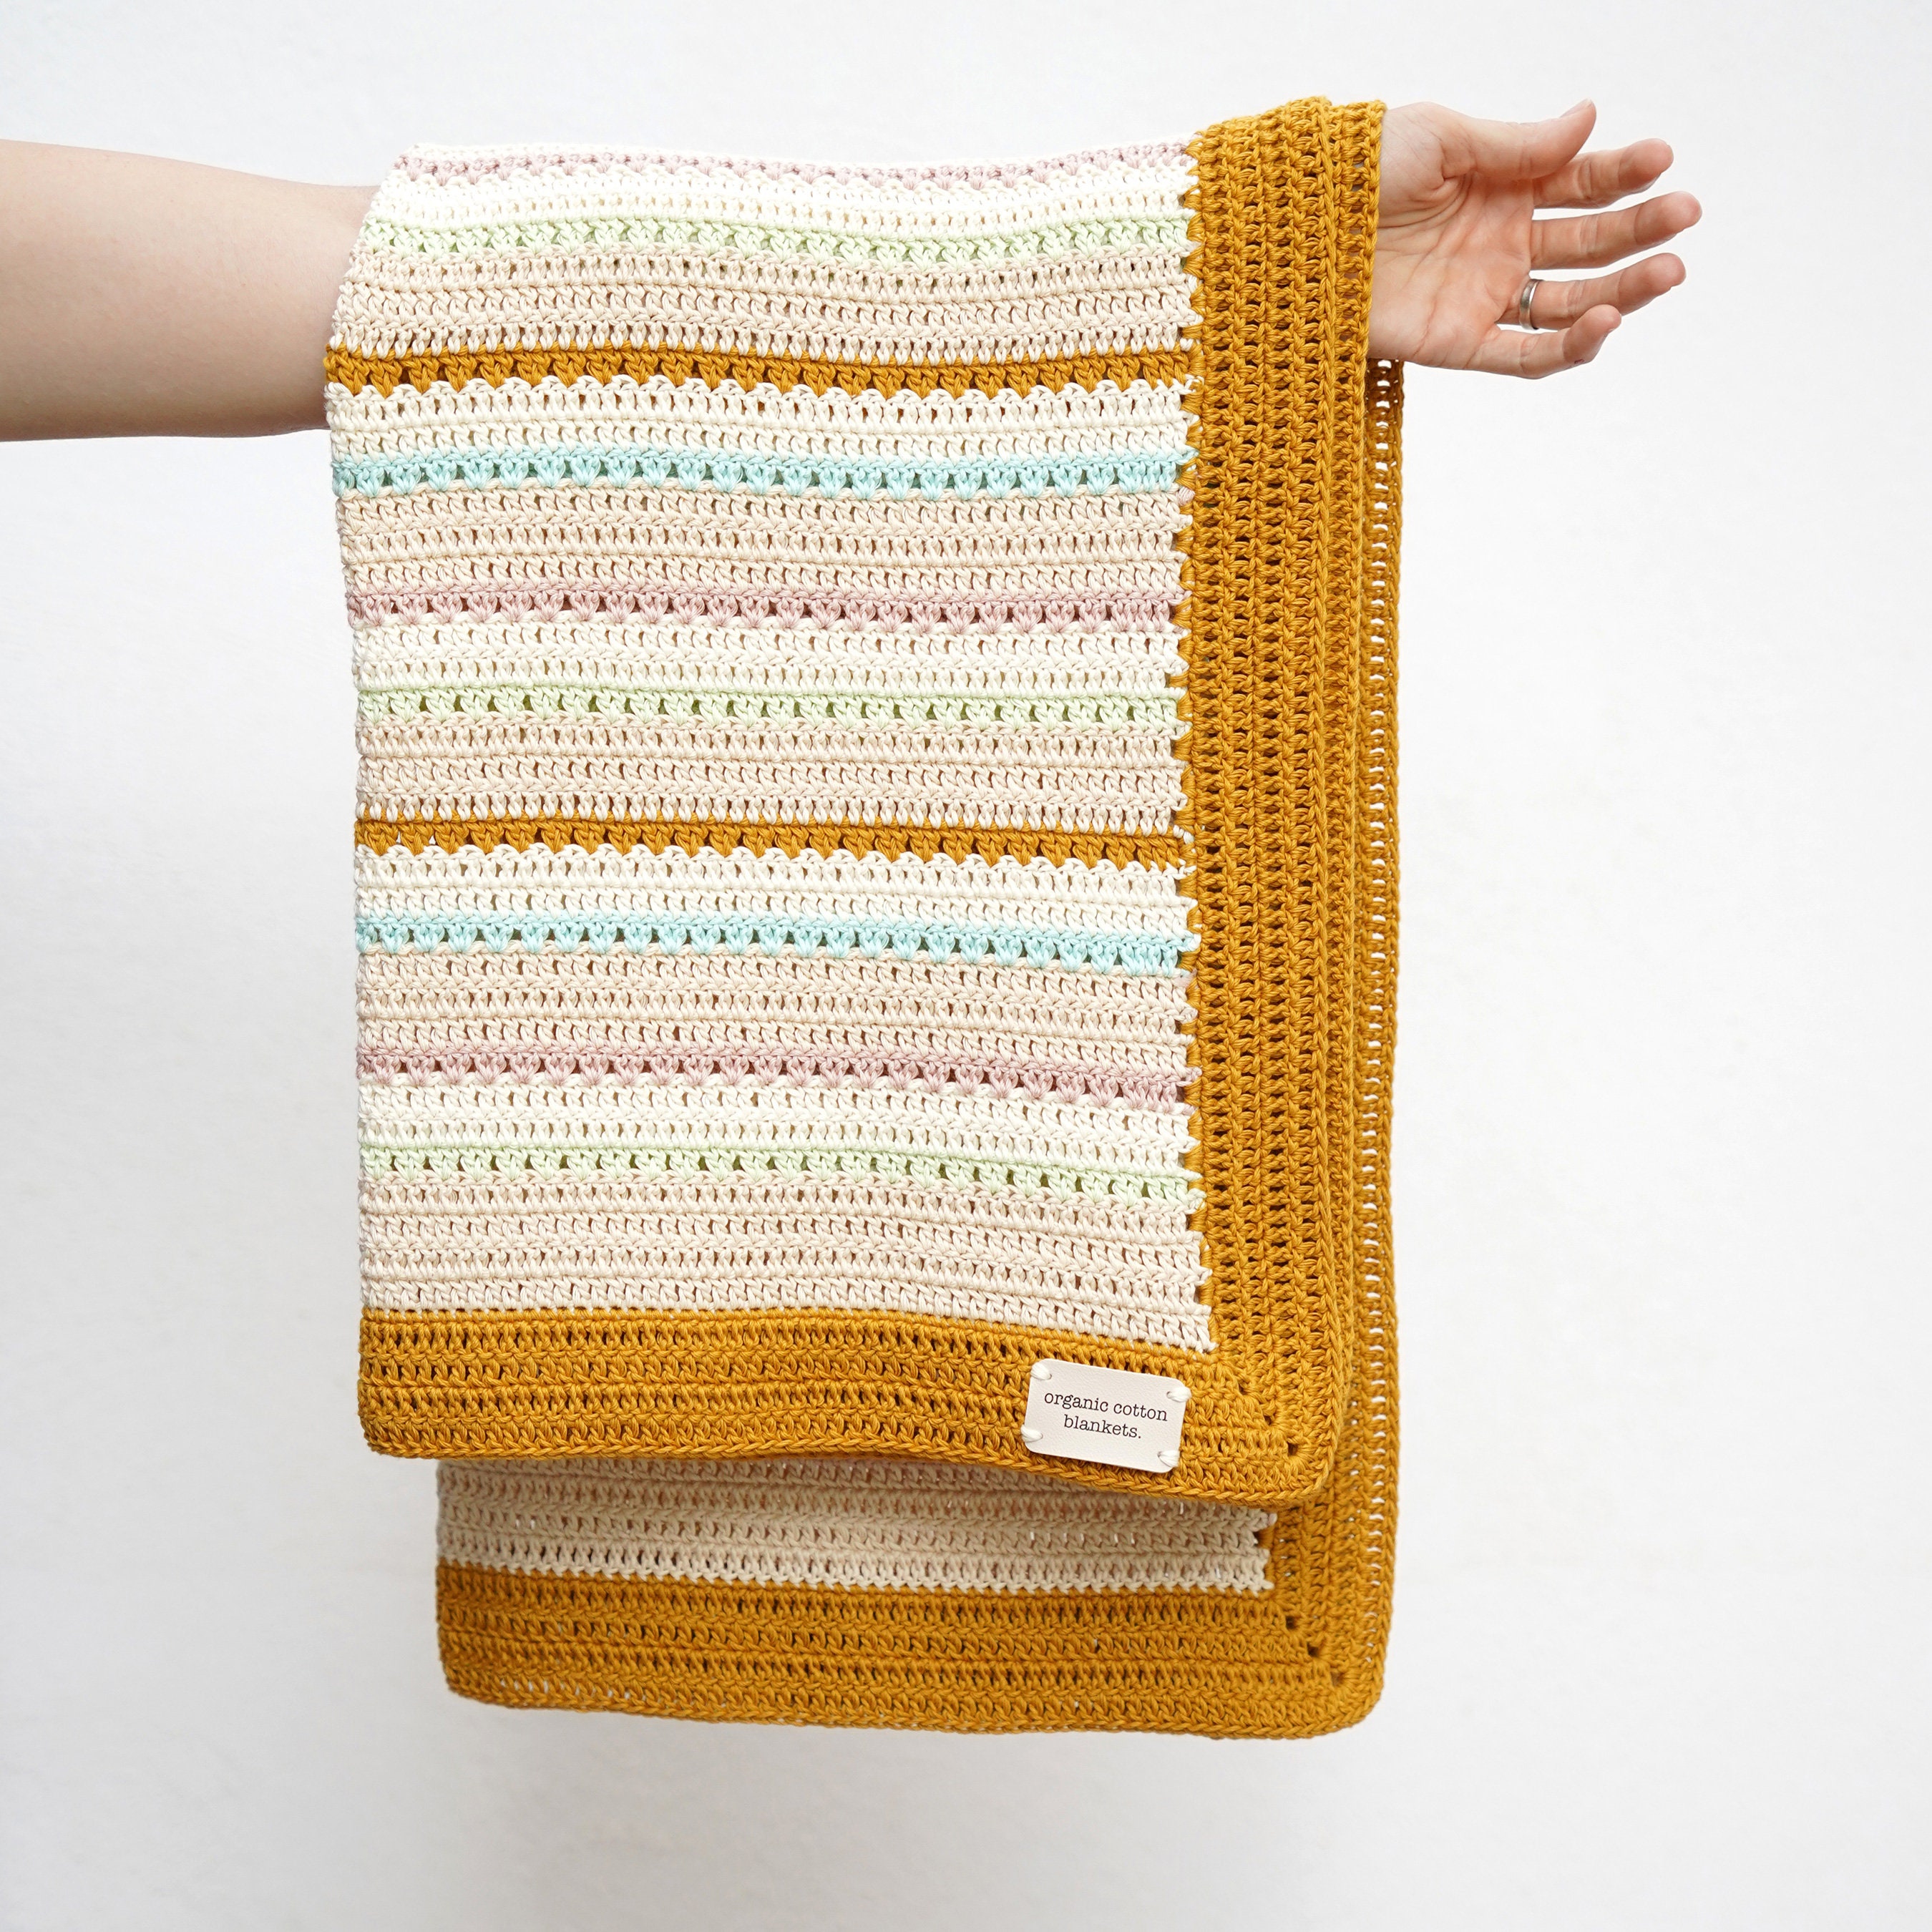 Manta Bebe Artesanal Punto Algodon Crochet 52 Cm X 52 Cm Nuevo Recién Nacido